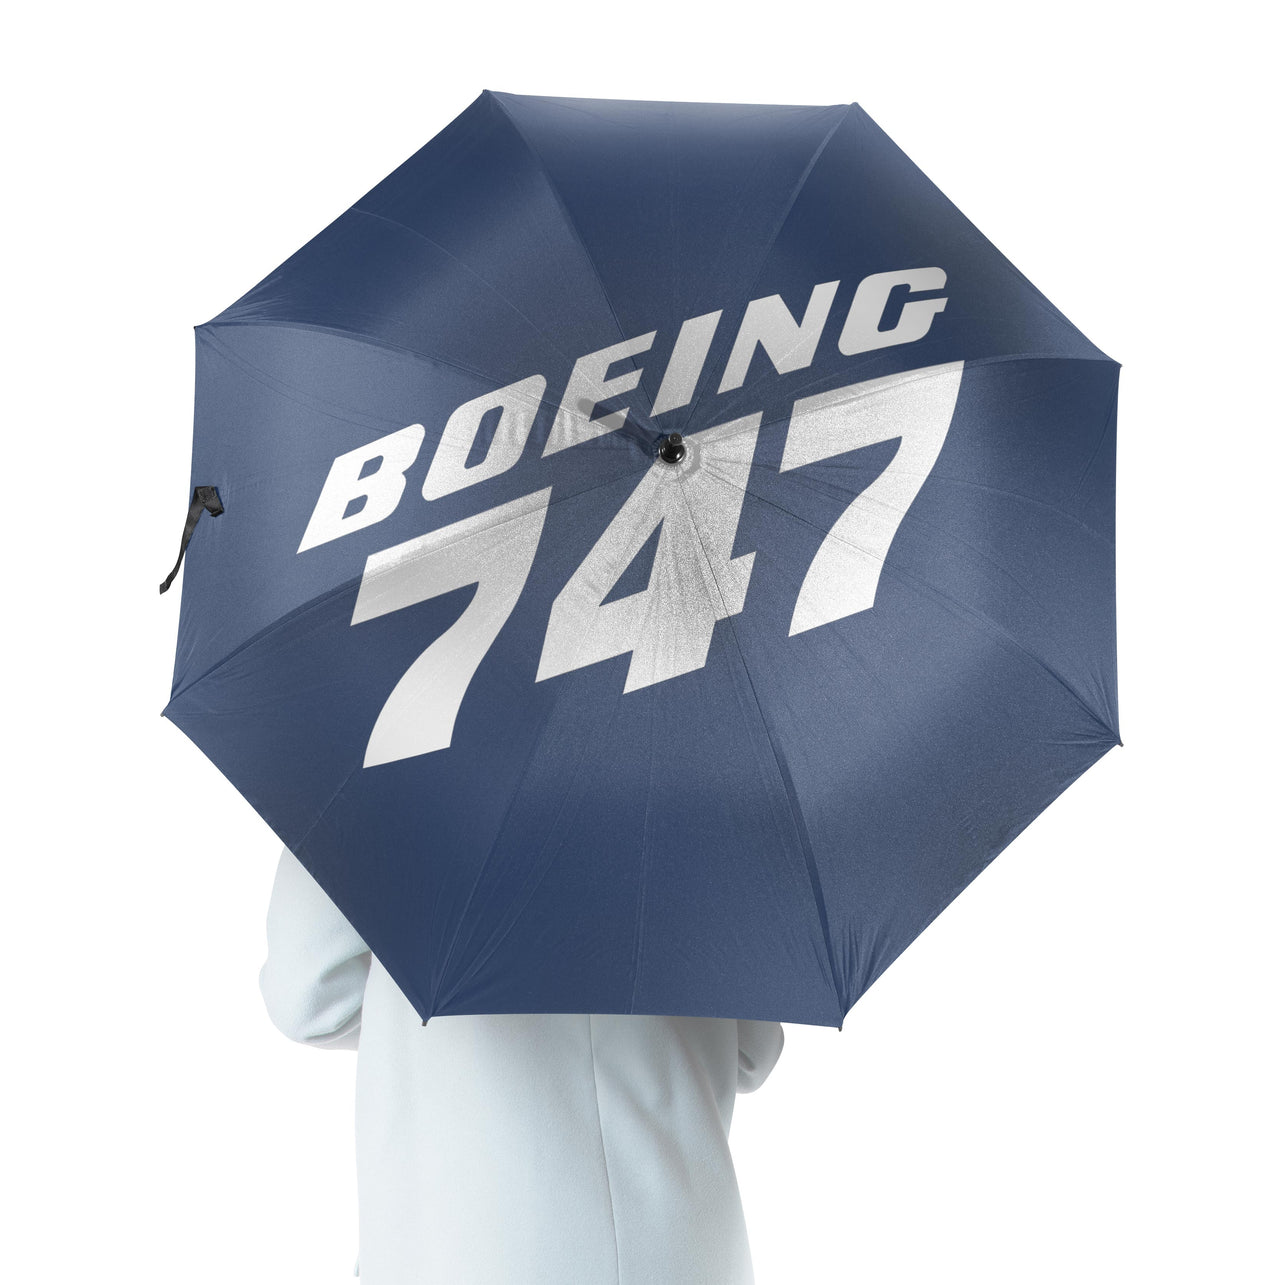 Boeing 747 & Text Designed Umbrella